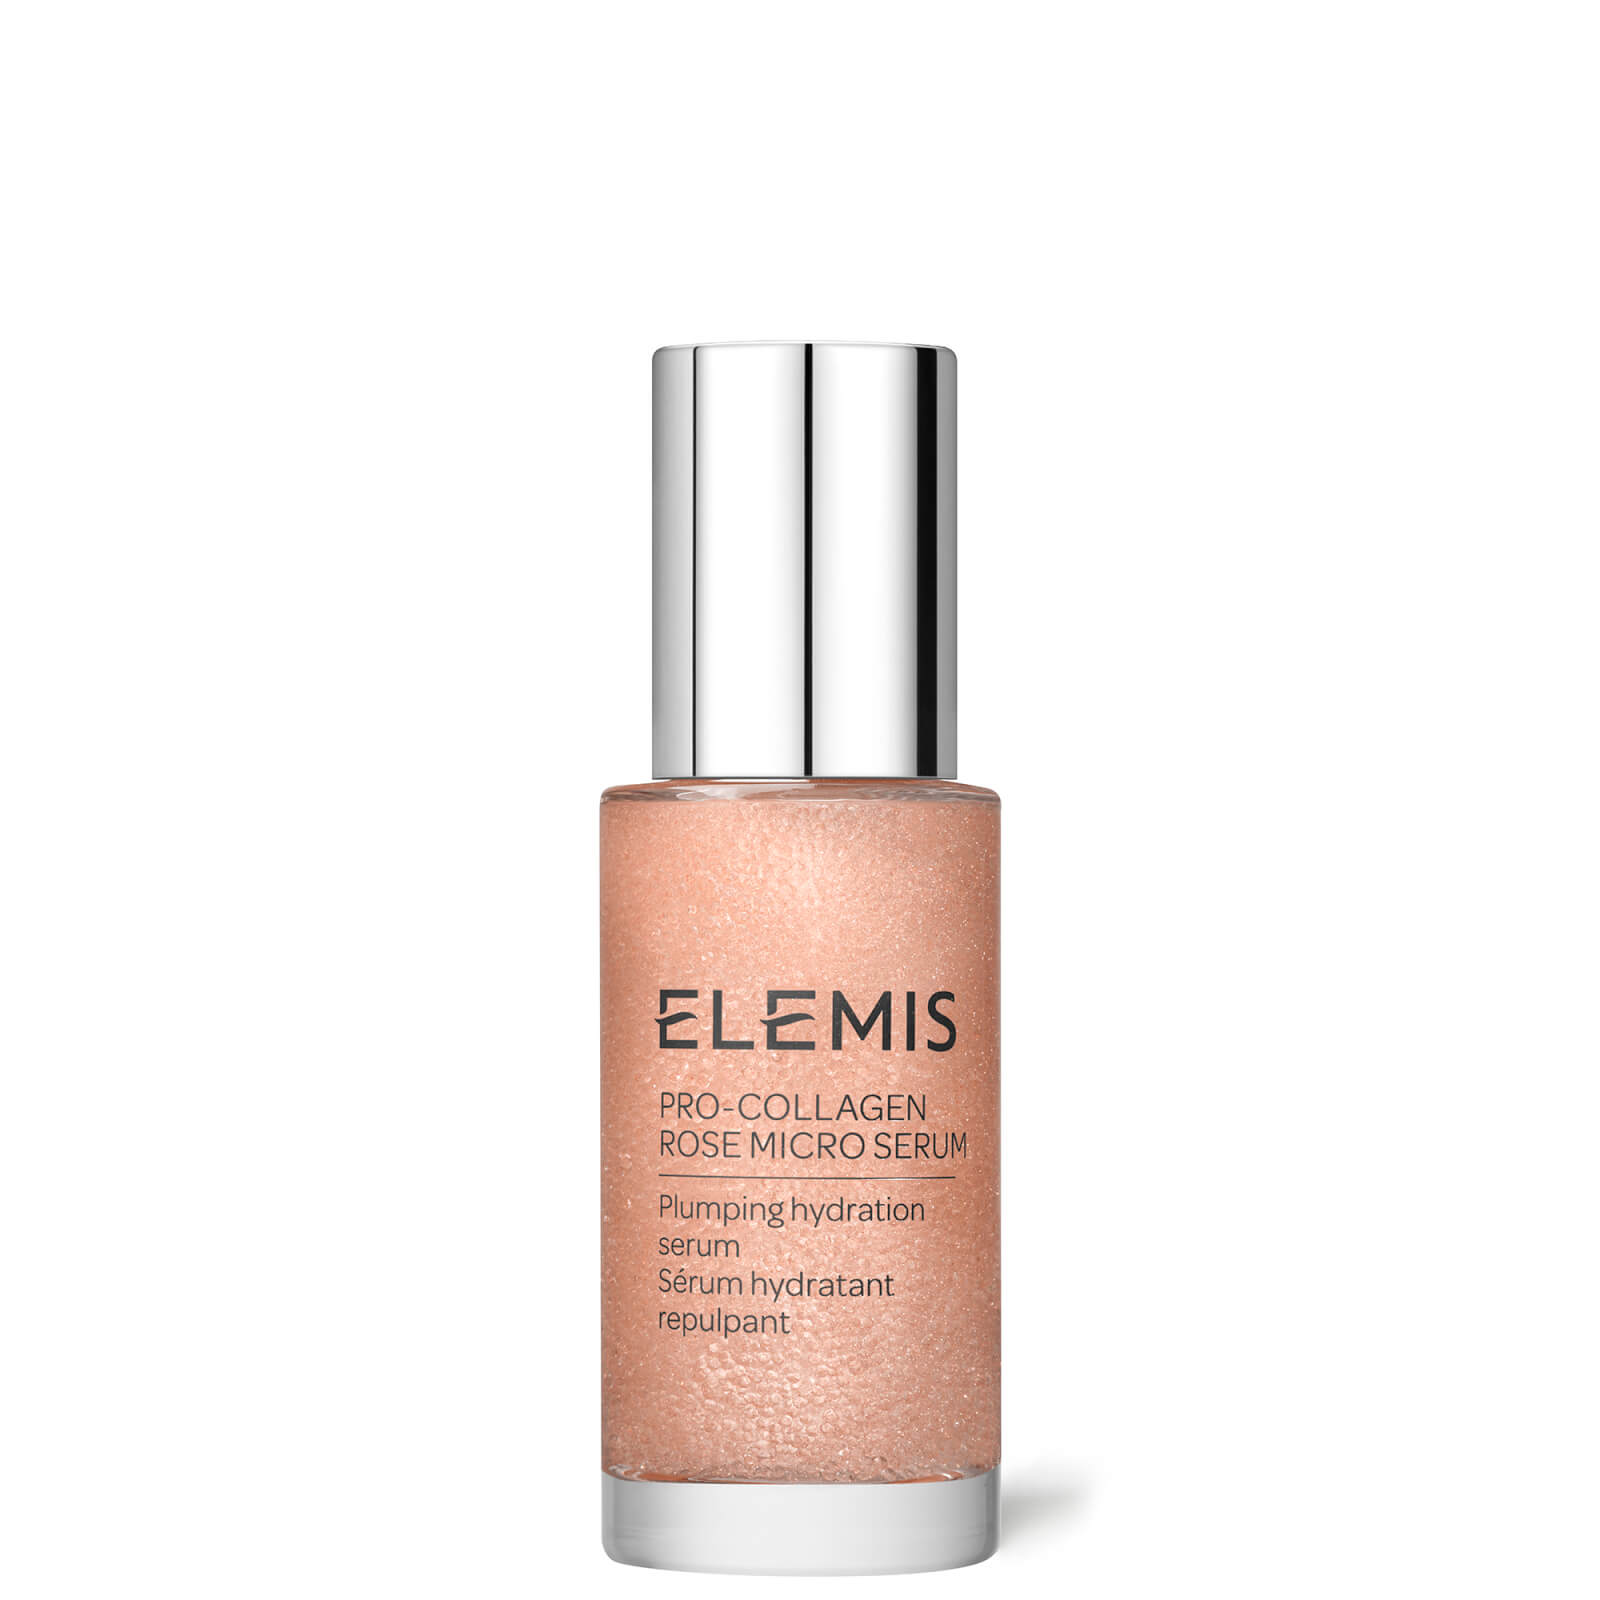 Image of Elemis Pro-Collagen Rose Micro Serum 30ml